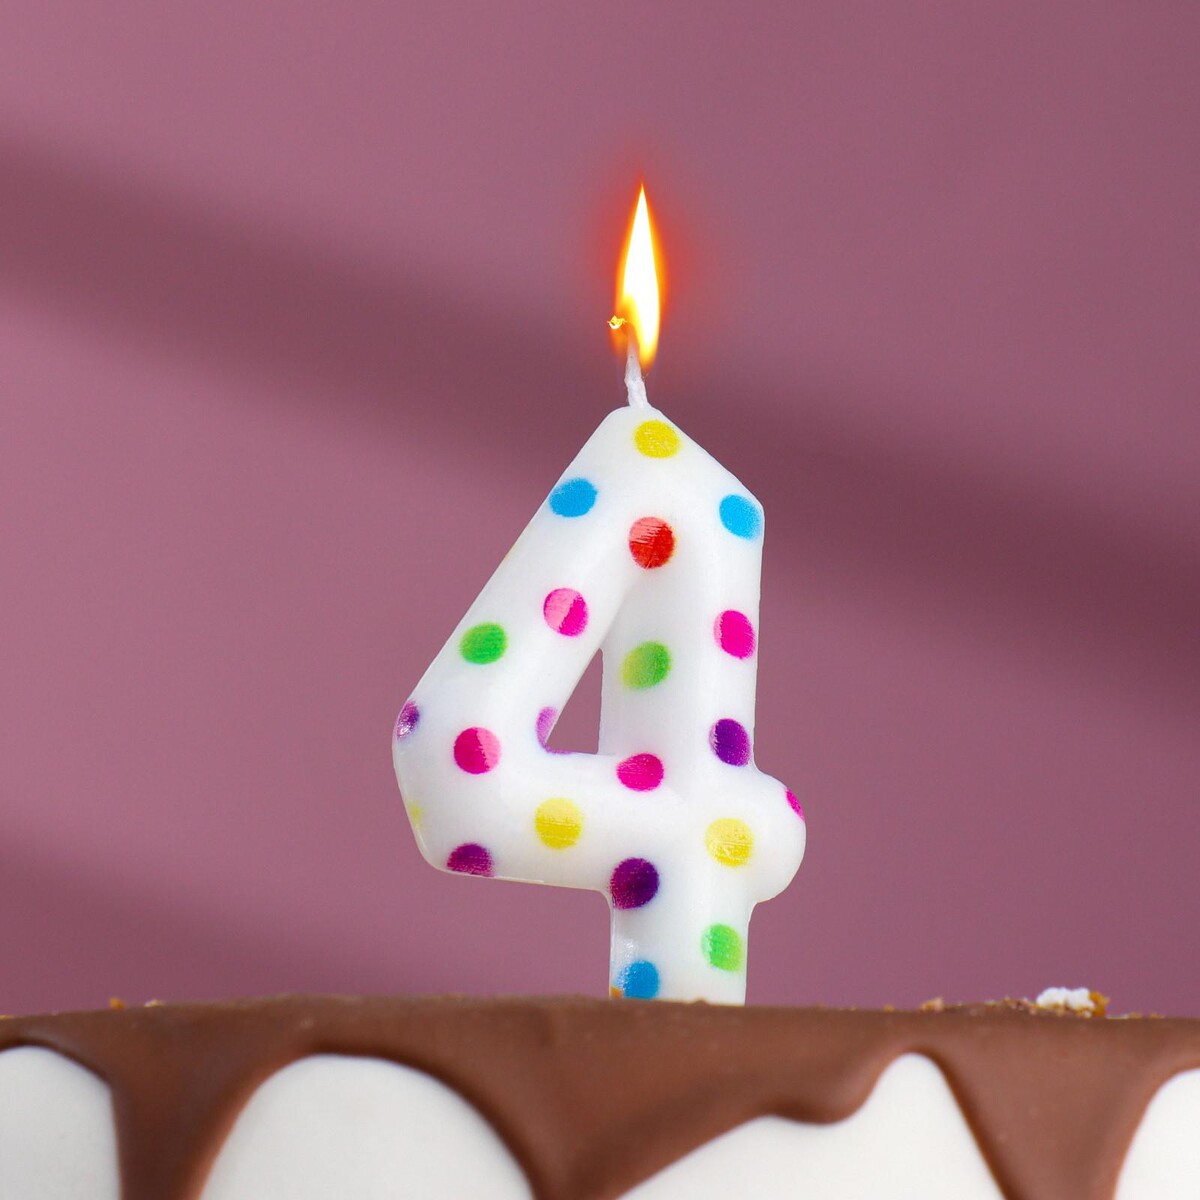 Свеча в торт на день рождения лёгкая йога для похудения идеальное тело за 5 минут в день гарантированный результат в любом возрасте